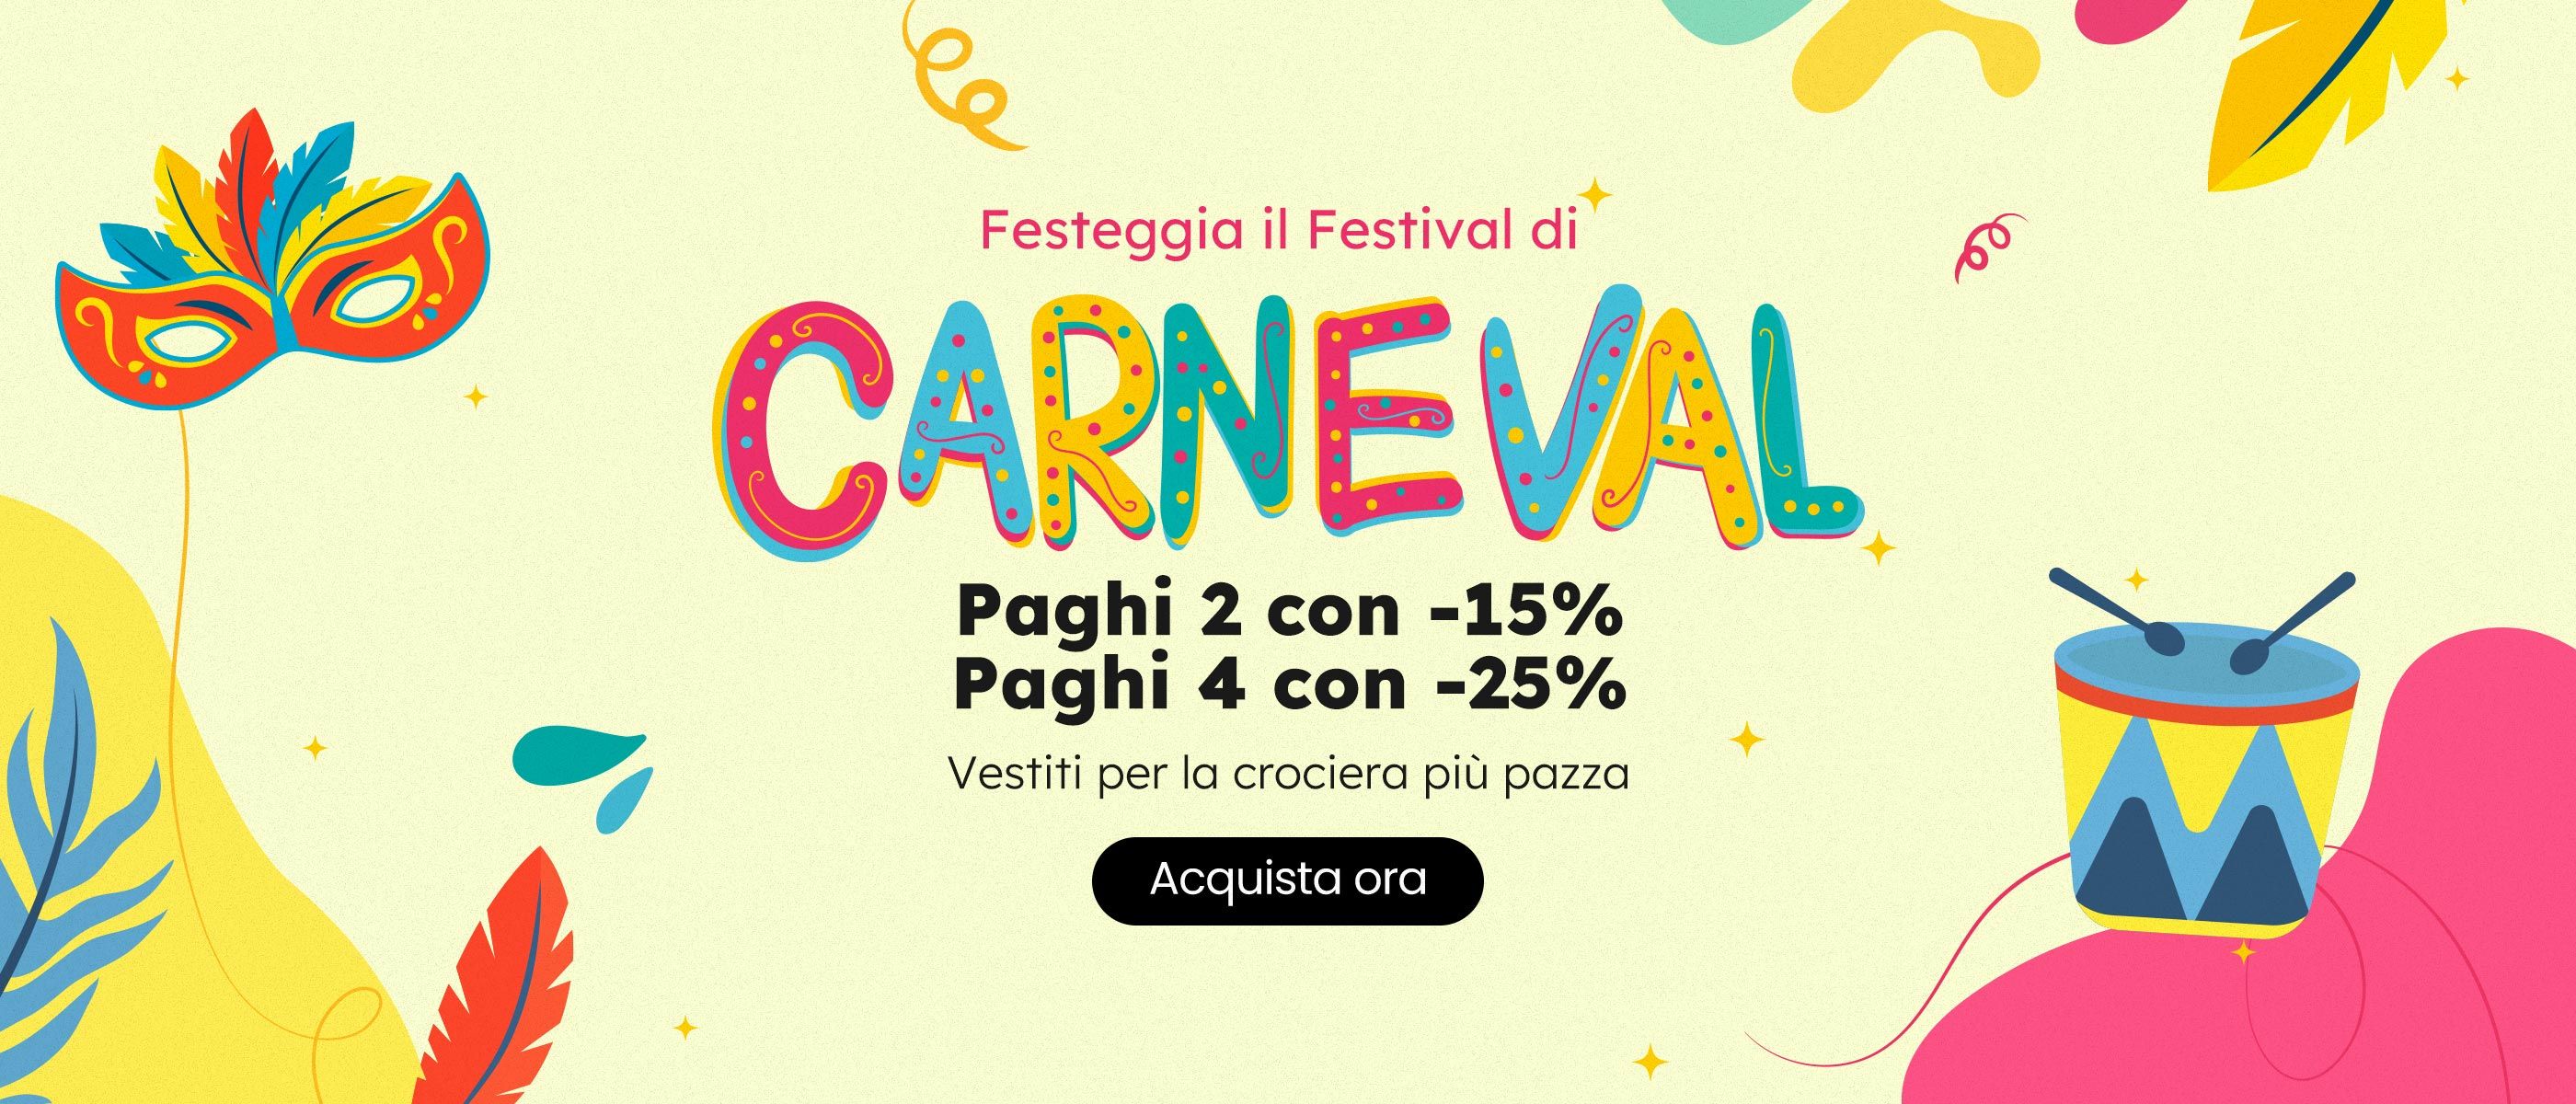 Click it to join Accordo di Carnevale activity